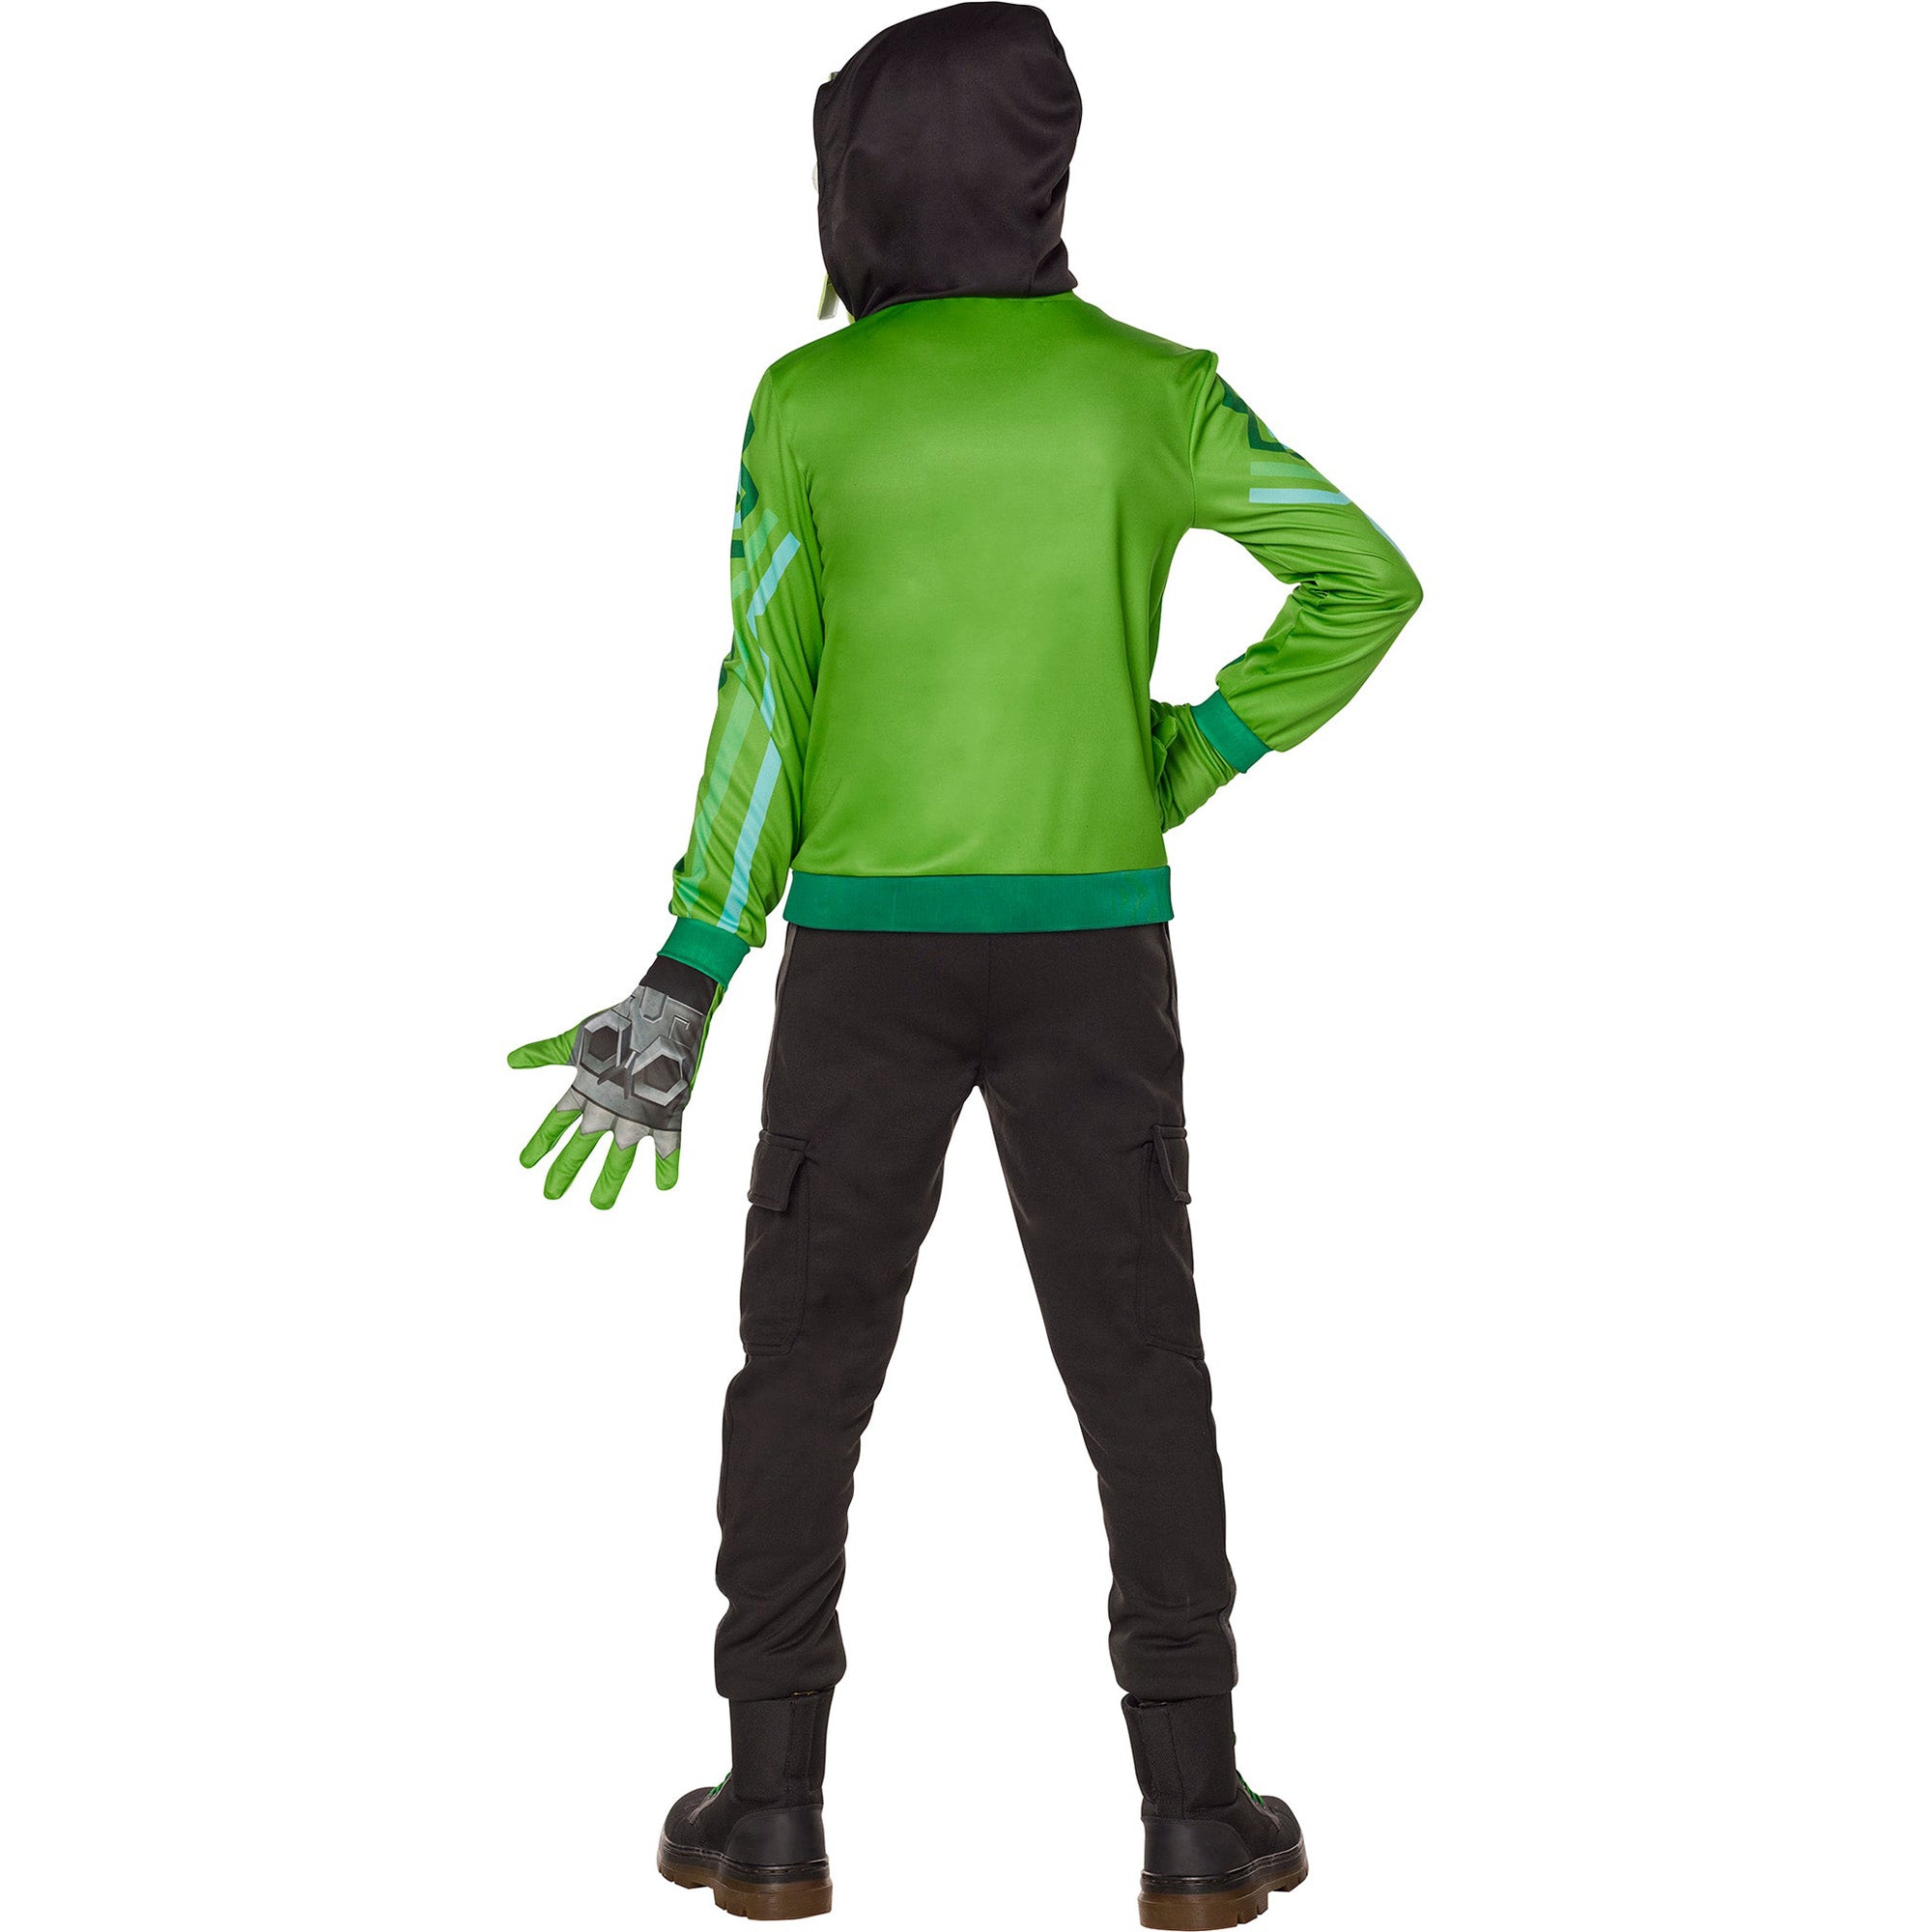 Mezmer Costume for Kids, Fortnite